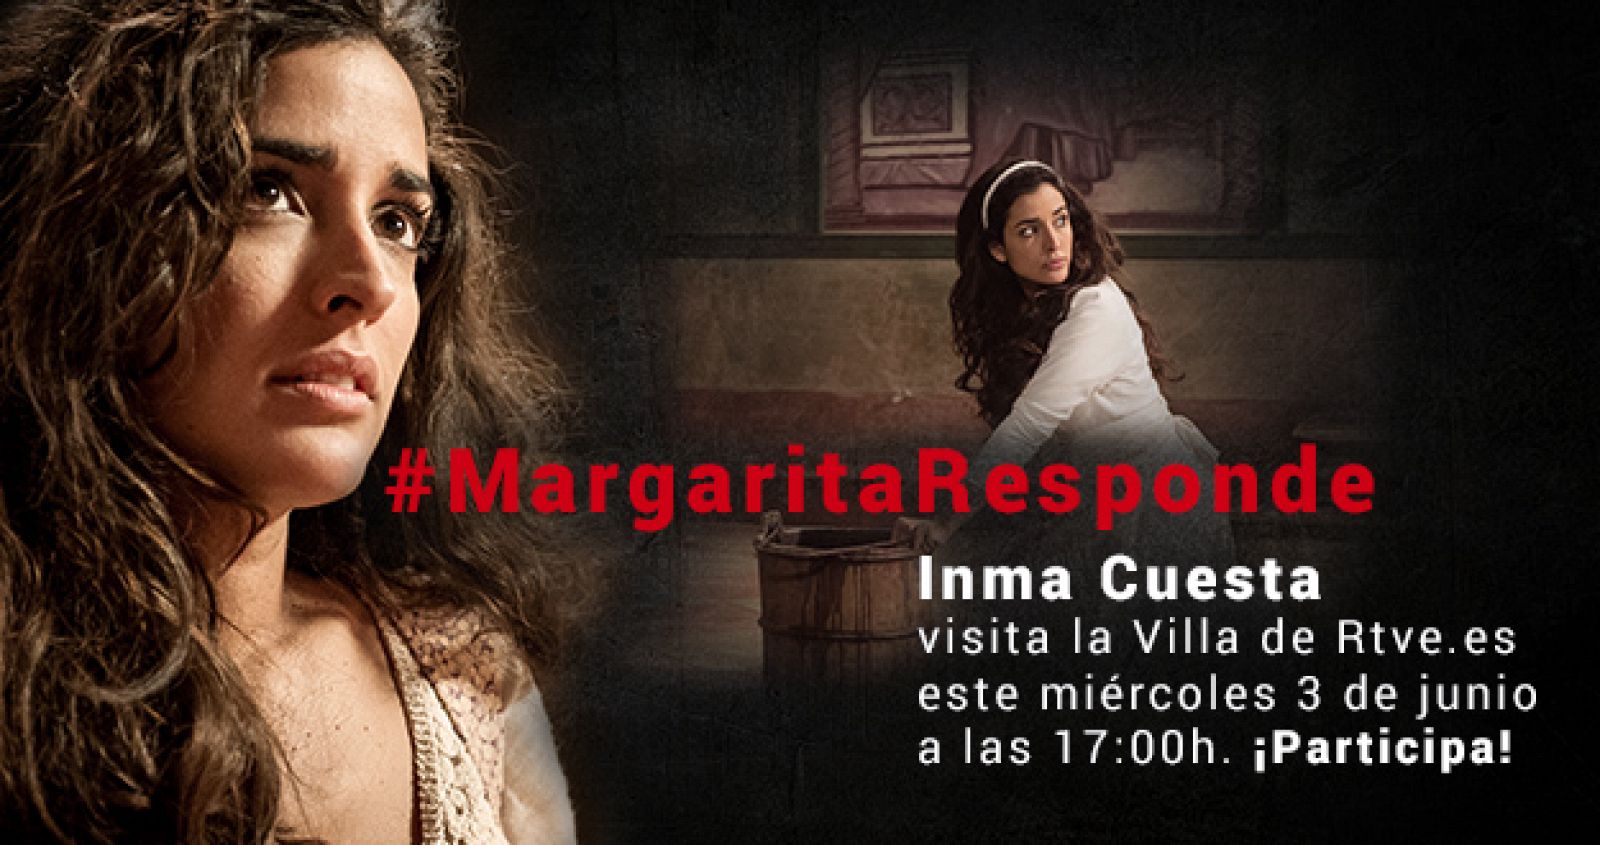 Inma Cuesta, próxima invitada a la Villa de RTVE.es. ¡Participa!